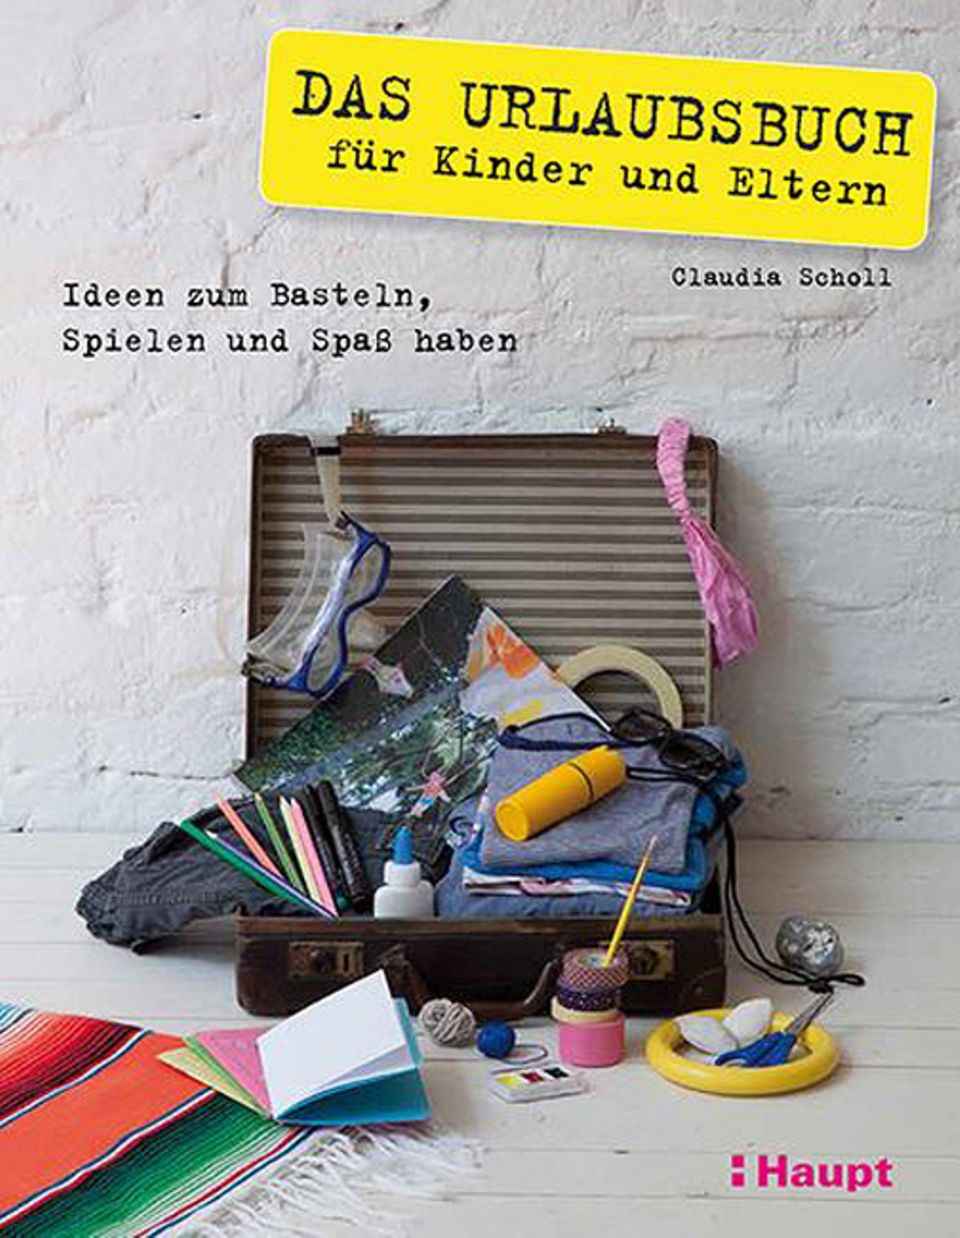 Buchtipp: Das Urlaubsbuch für Kinder und Eltern, Claudia Scholl, Haupt Verlag, 160 Seiten, 19,90 Euro